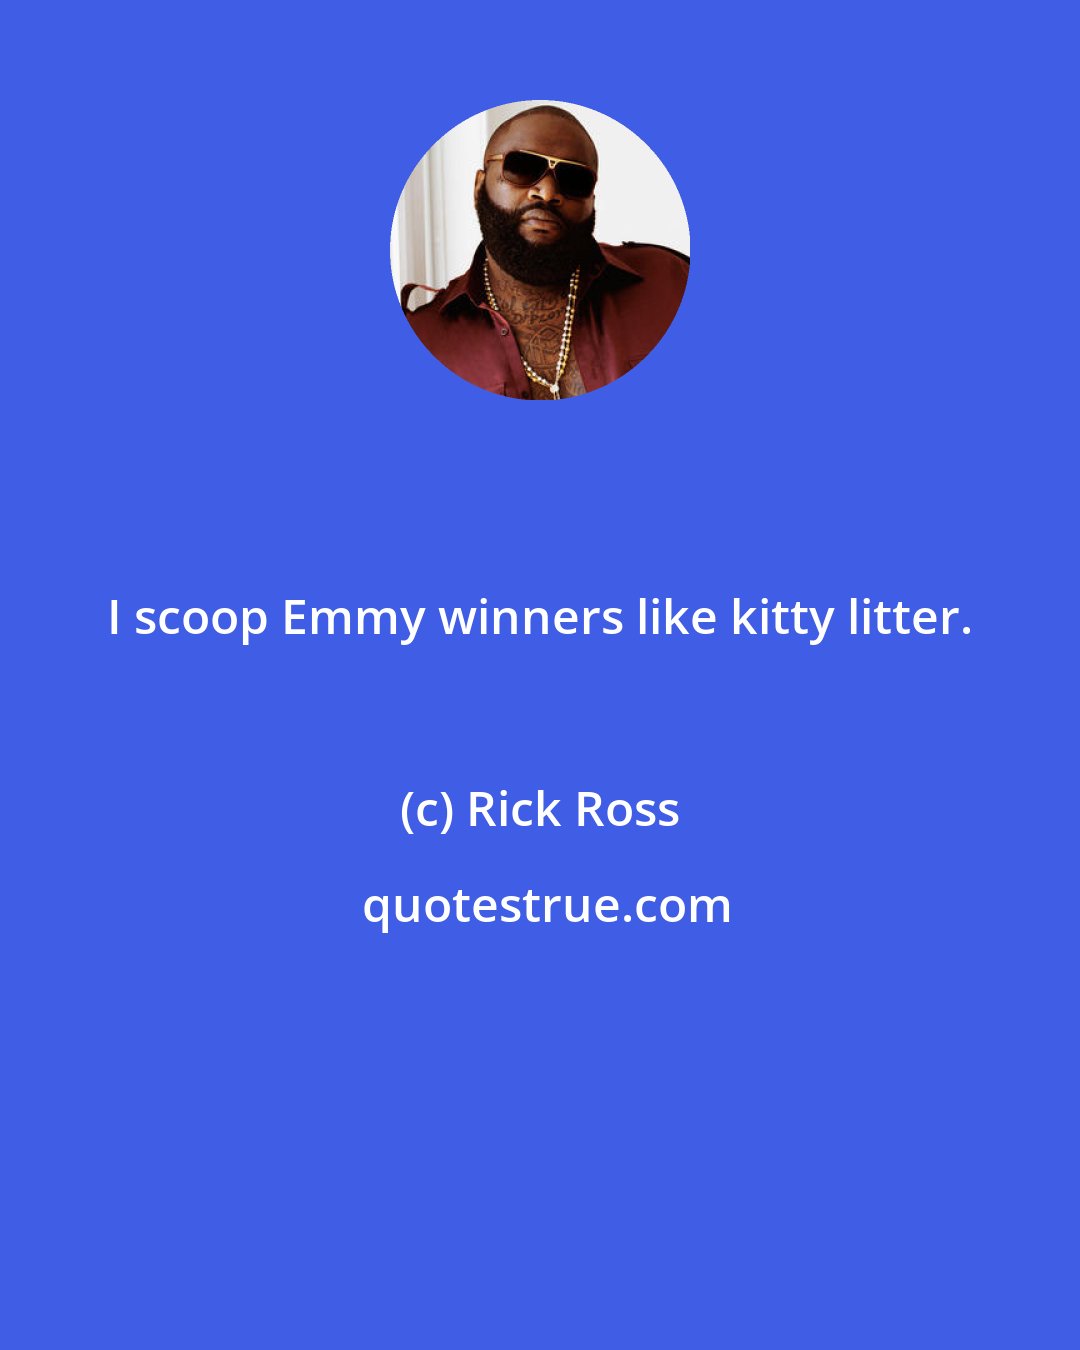 Rick Ross: I scoop Emmy winners like kitty litter.